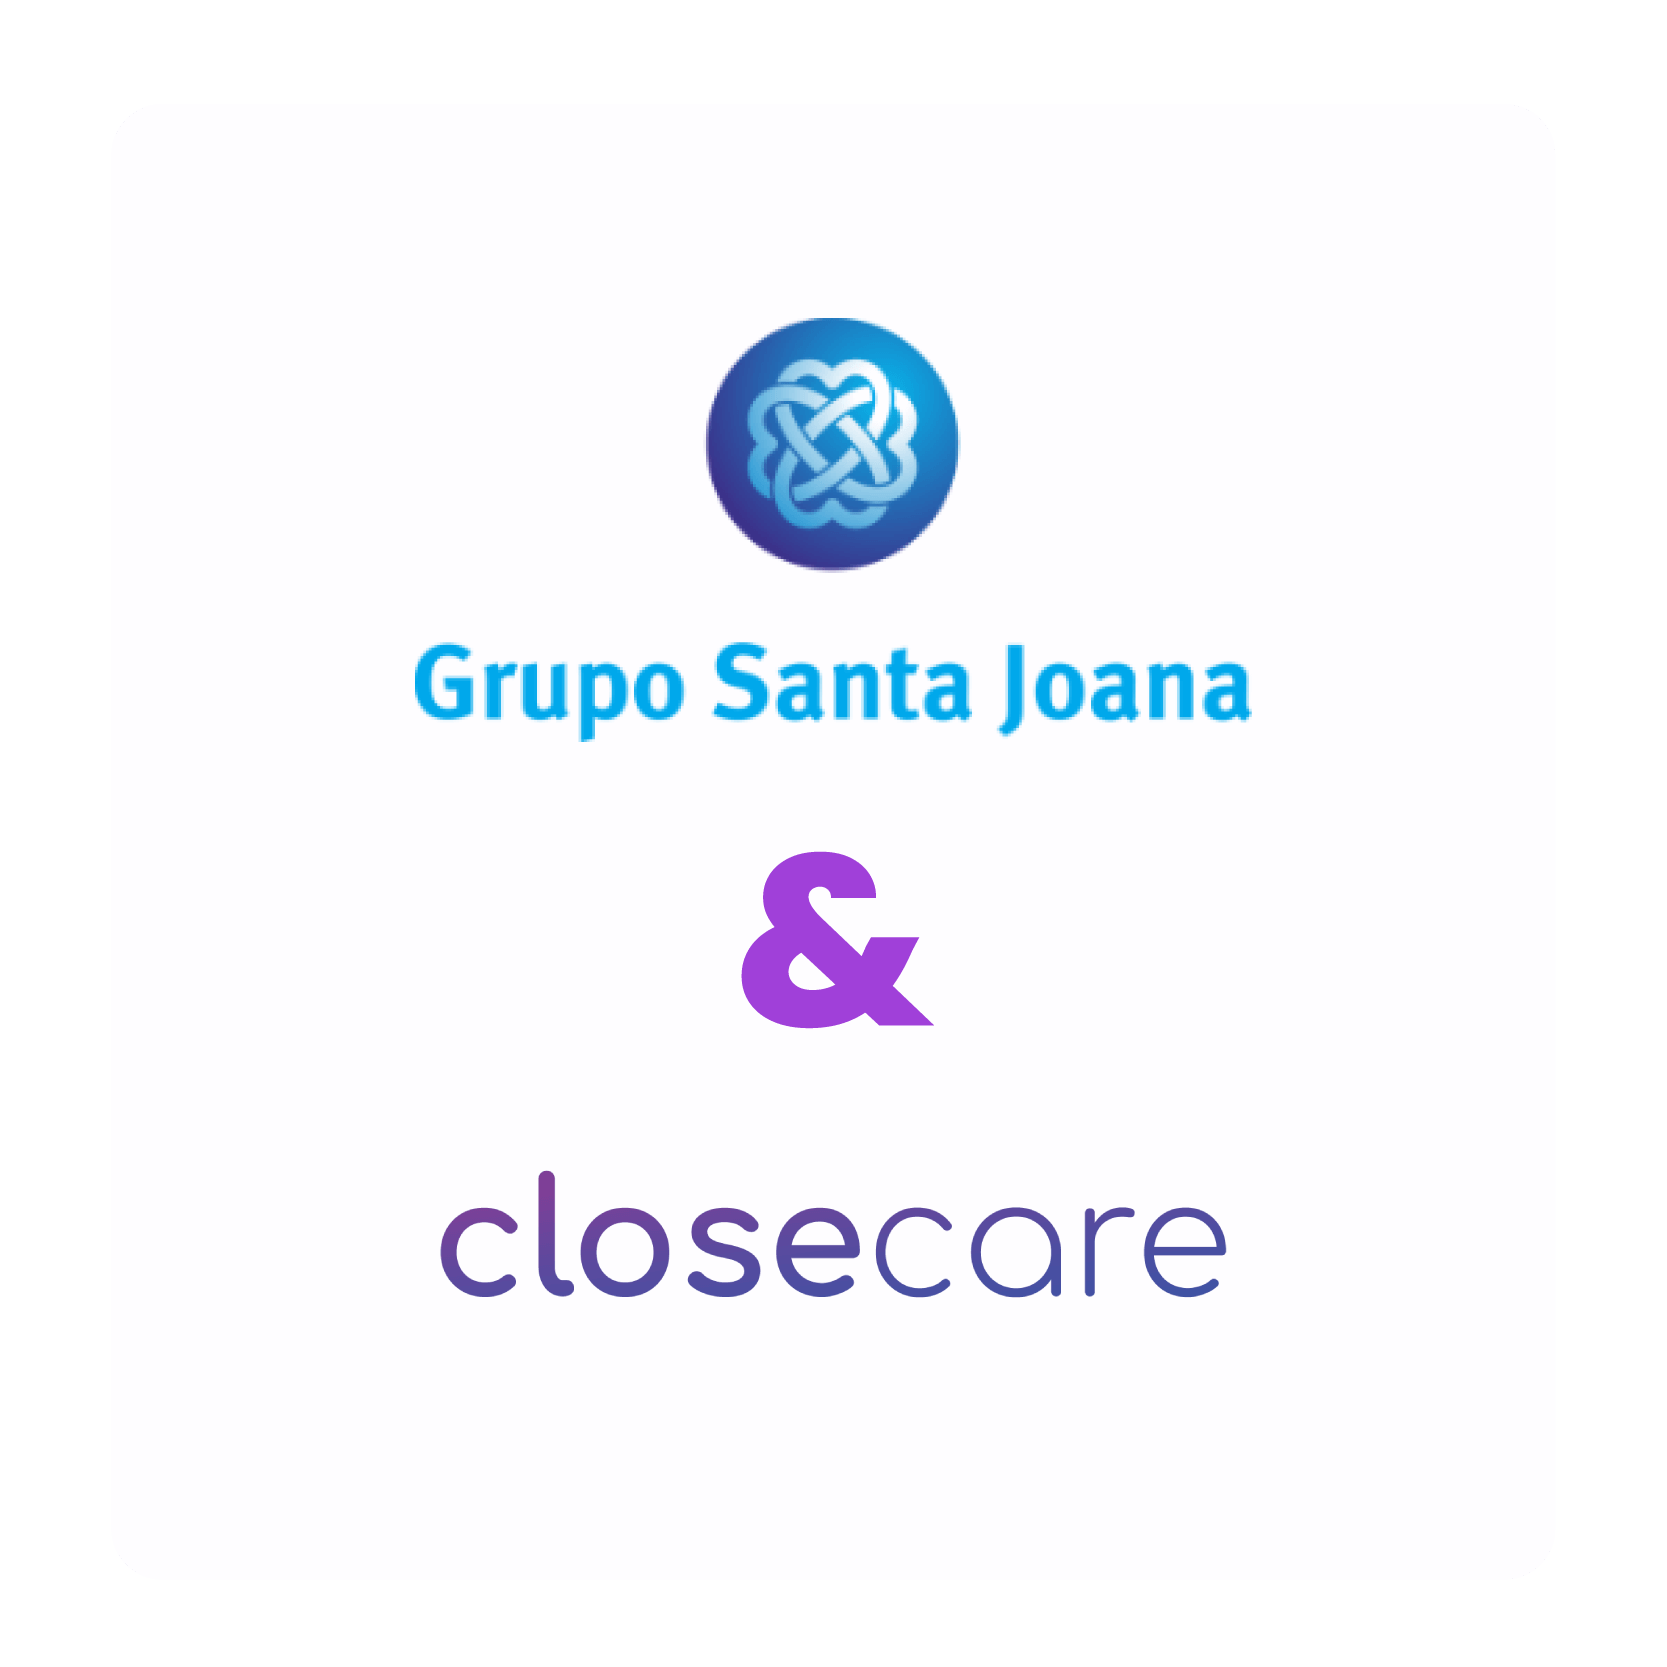 Santa Joana & Closecare-06